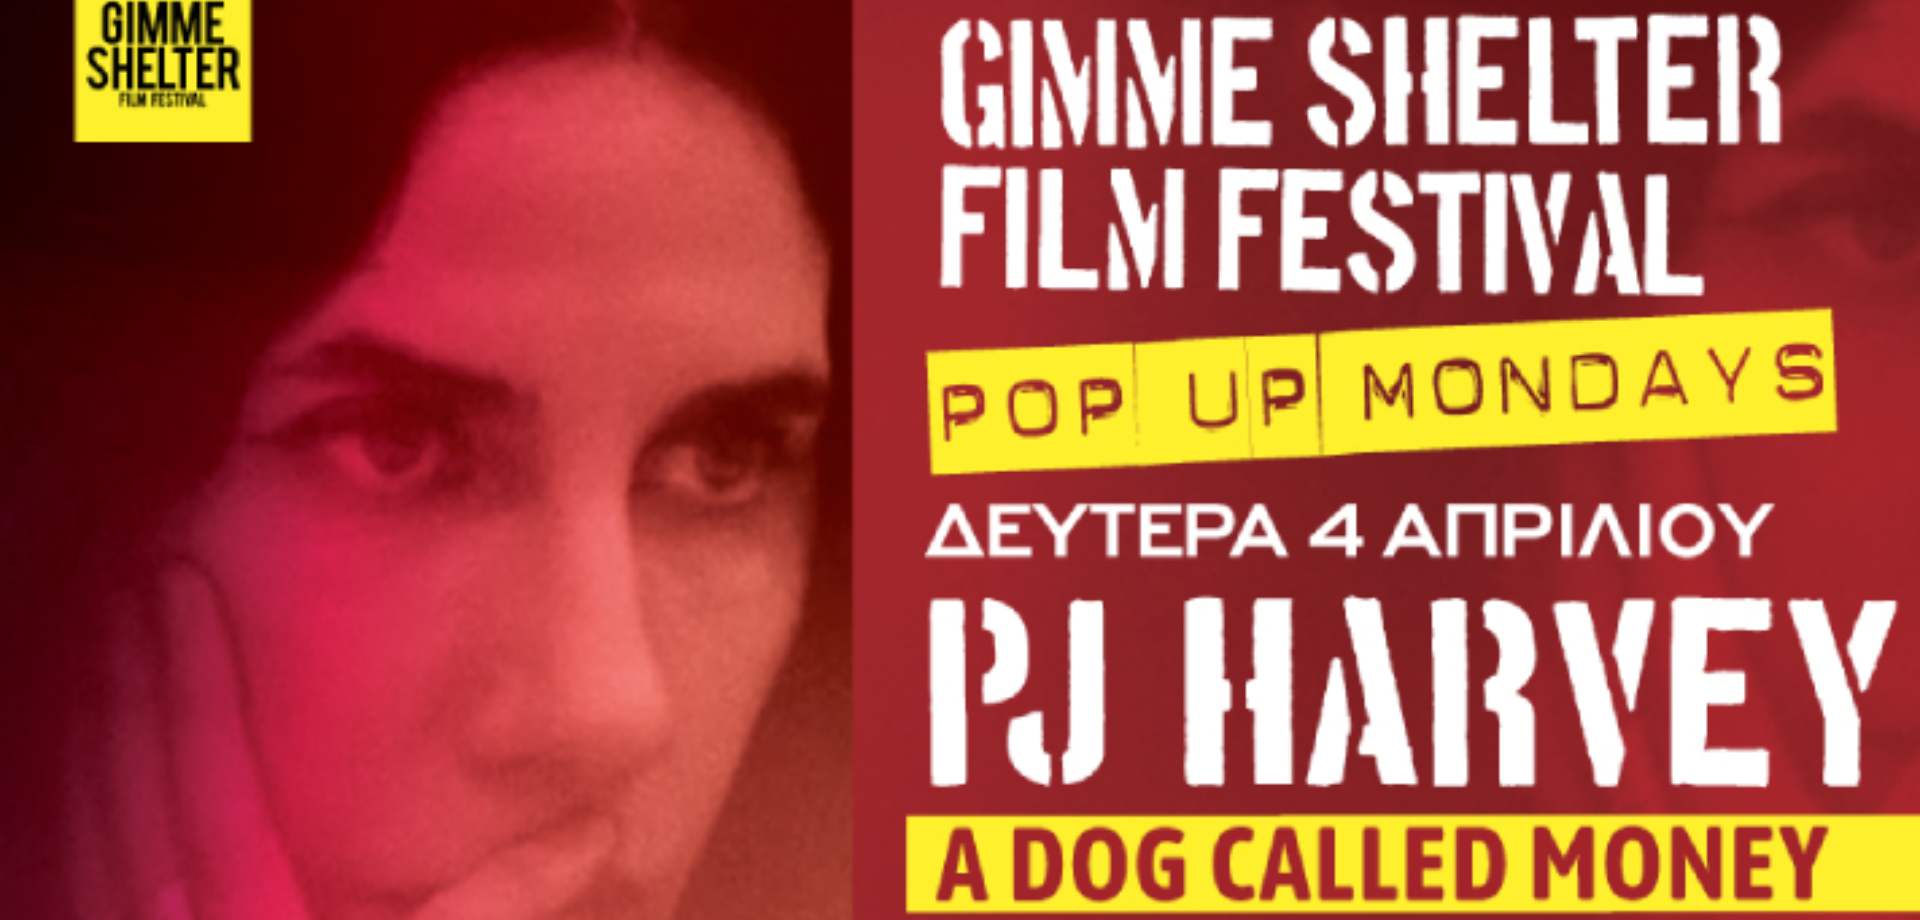 Πρώτη προβολή: PJ Harvey "A Dog Called Money" και live με τους Noise Figures στο Gimme Shelter Film Festival